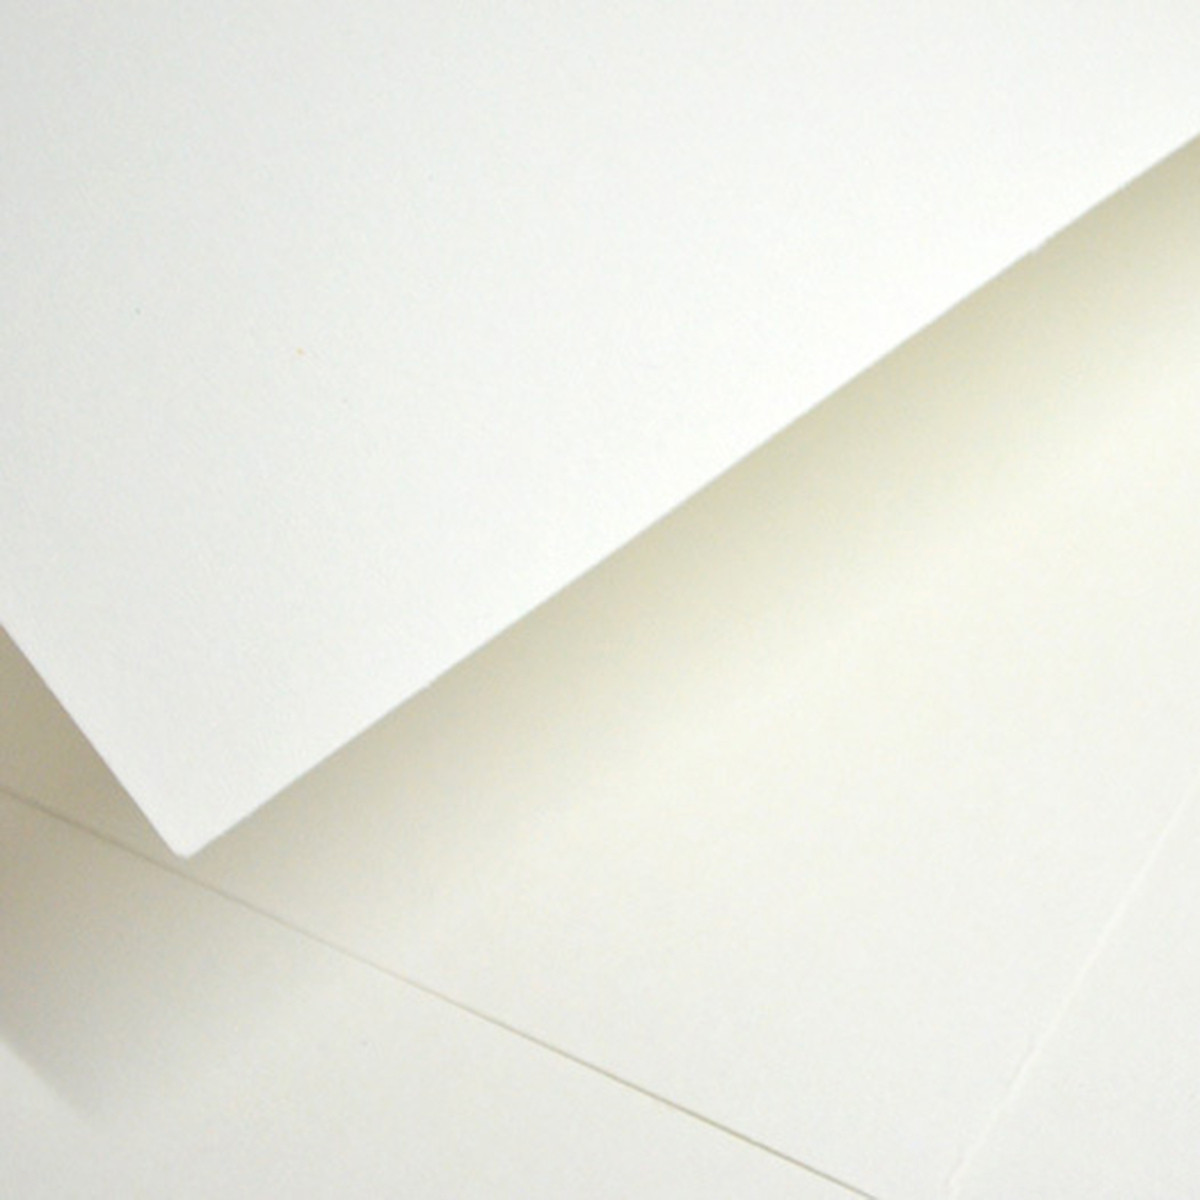 Yasutomo Japanese Sketch Paper Pads | BLICK Art Materials